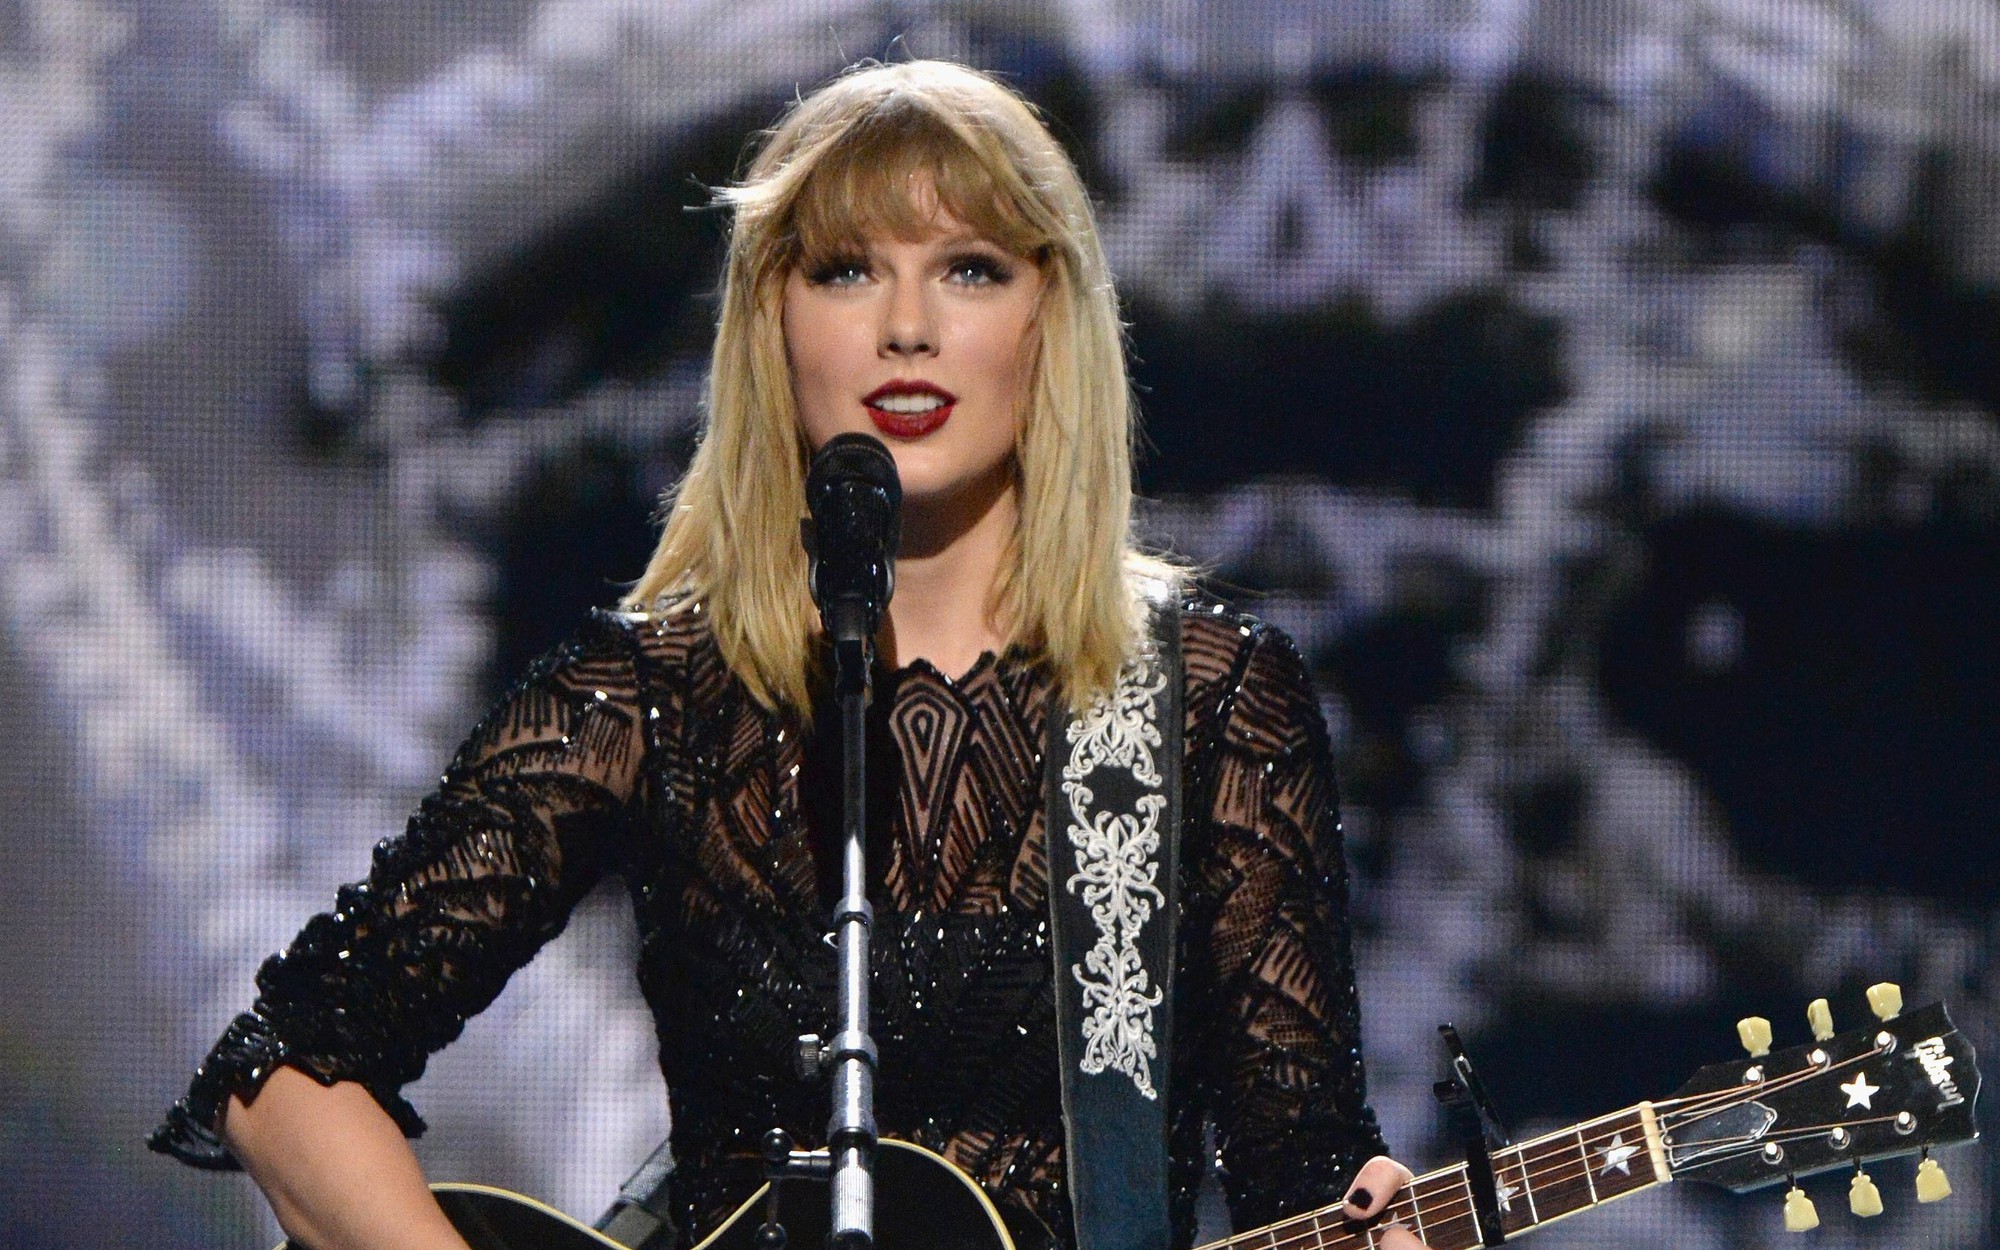 Nữ ca sĩ Taylor Swift trình diễn phiên bản acoustic của ca khúc I dont wanna live forever trên sân khấu - Ảnh: Gettty Images